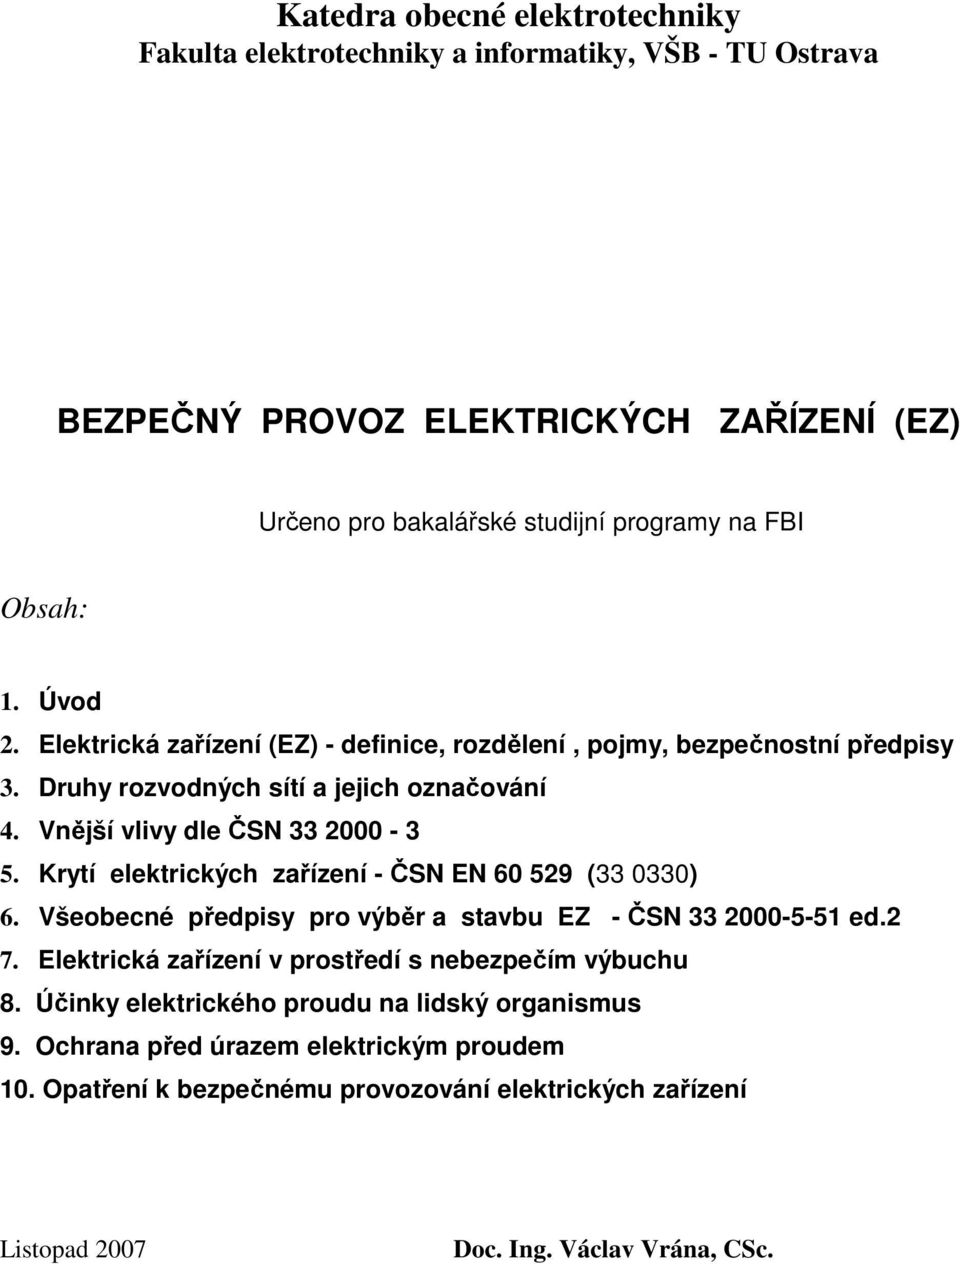 Krytí elektrických zařízení - ČSN EN 60 529 (33 0330) 6. Všeobecné předpisy pro výběr a stavbu EZ - ČSN 33 2000-5-51 ed.2 7. Elektrická zařízení v prostředí s nebezpečím výbuchu 8.